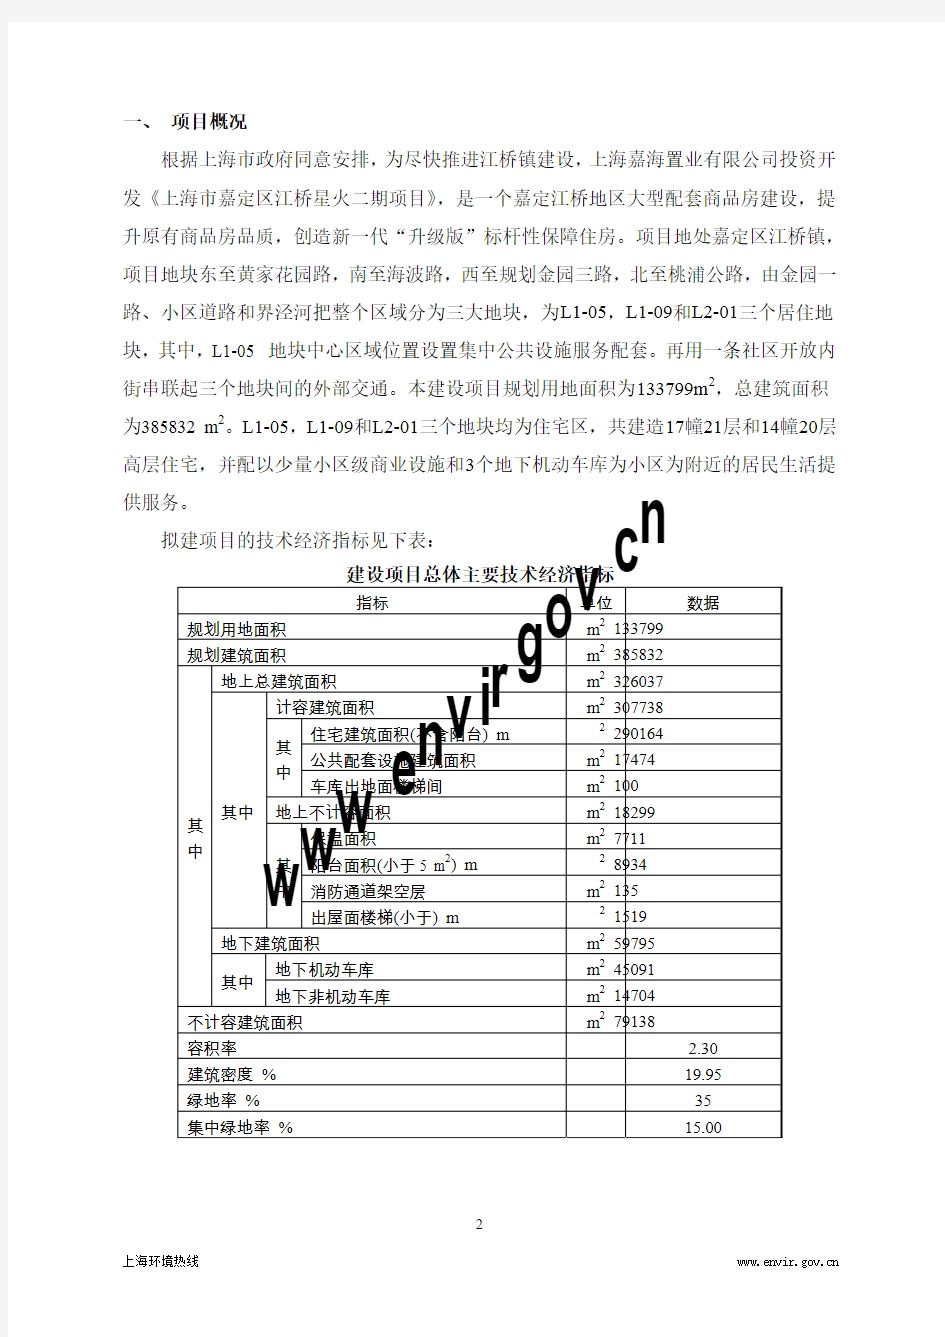 上海市嘉定区江桥星火二期项目 环境影响报告书简本